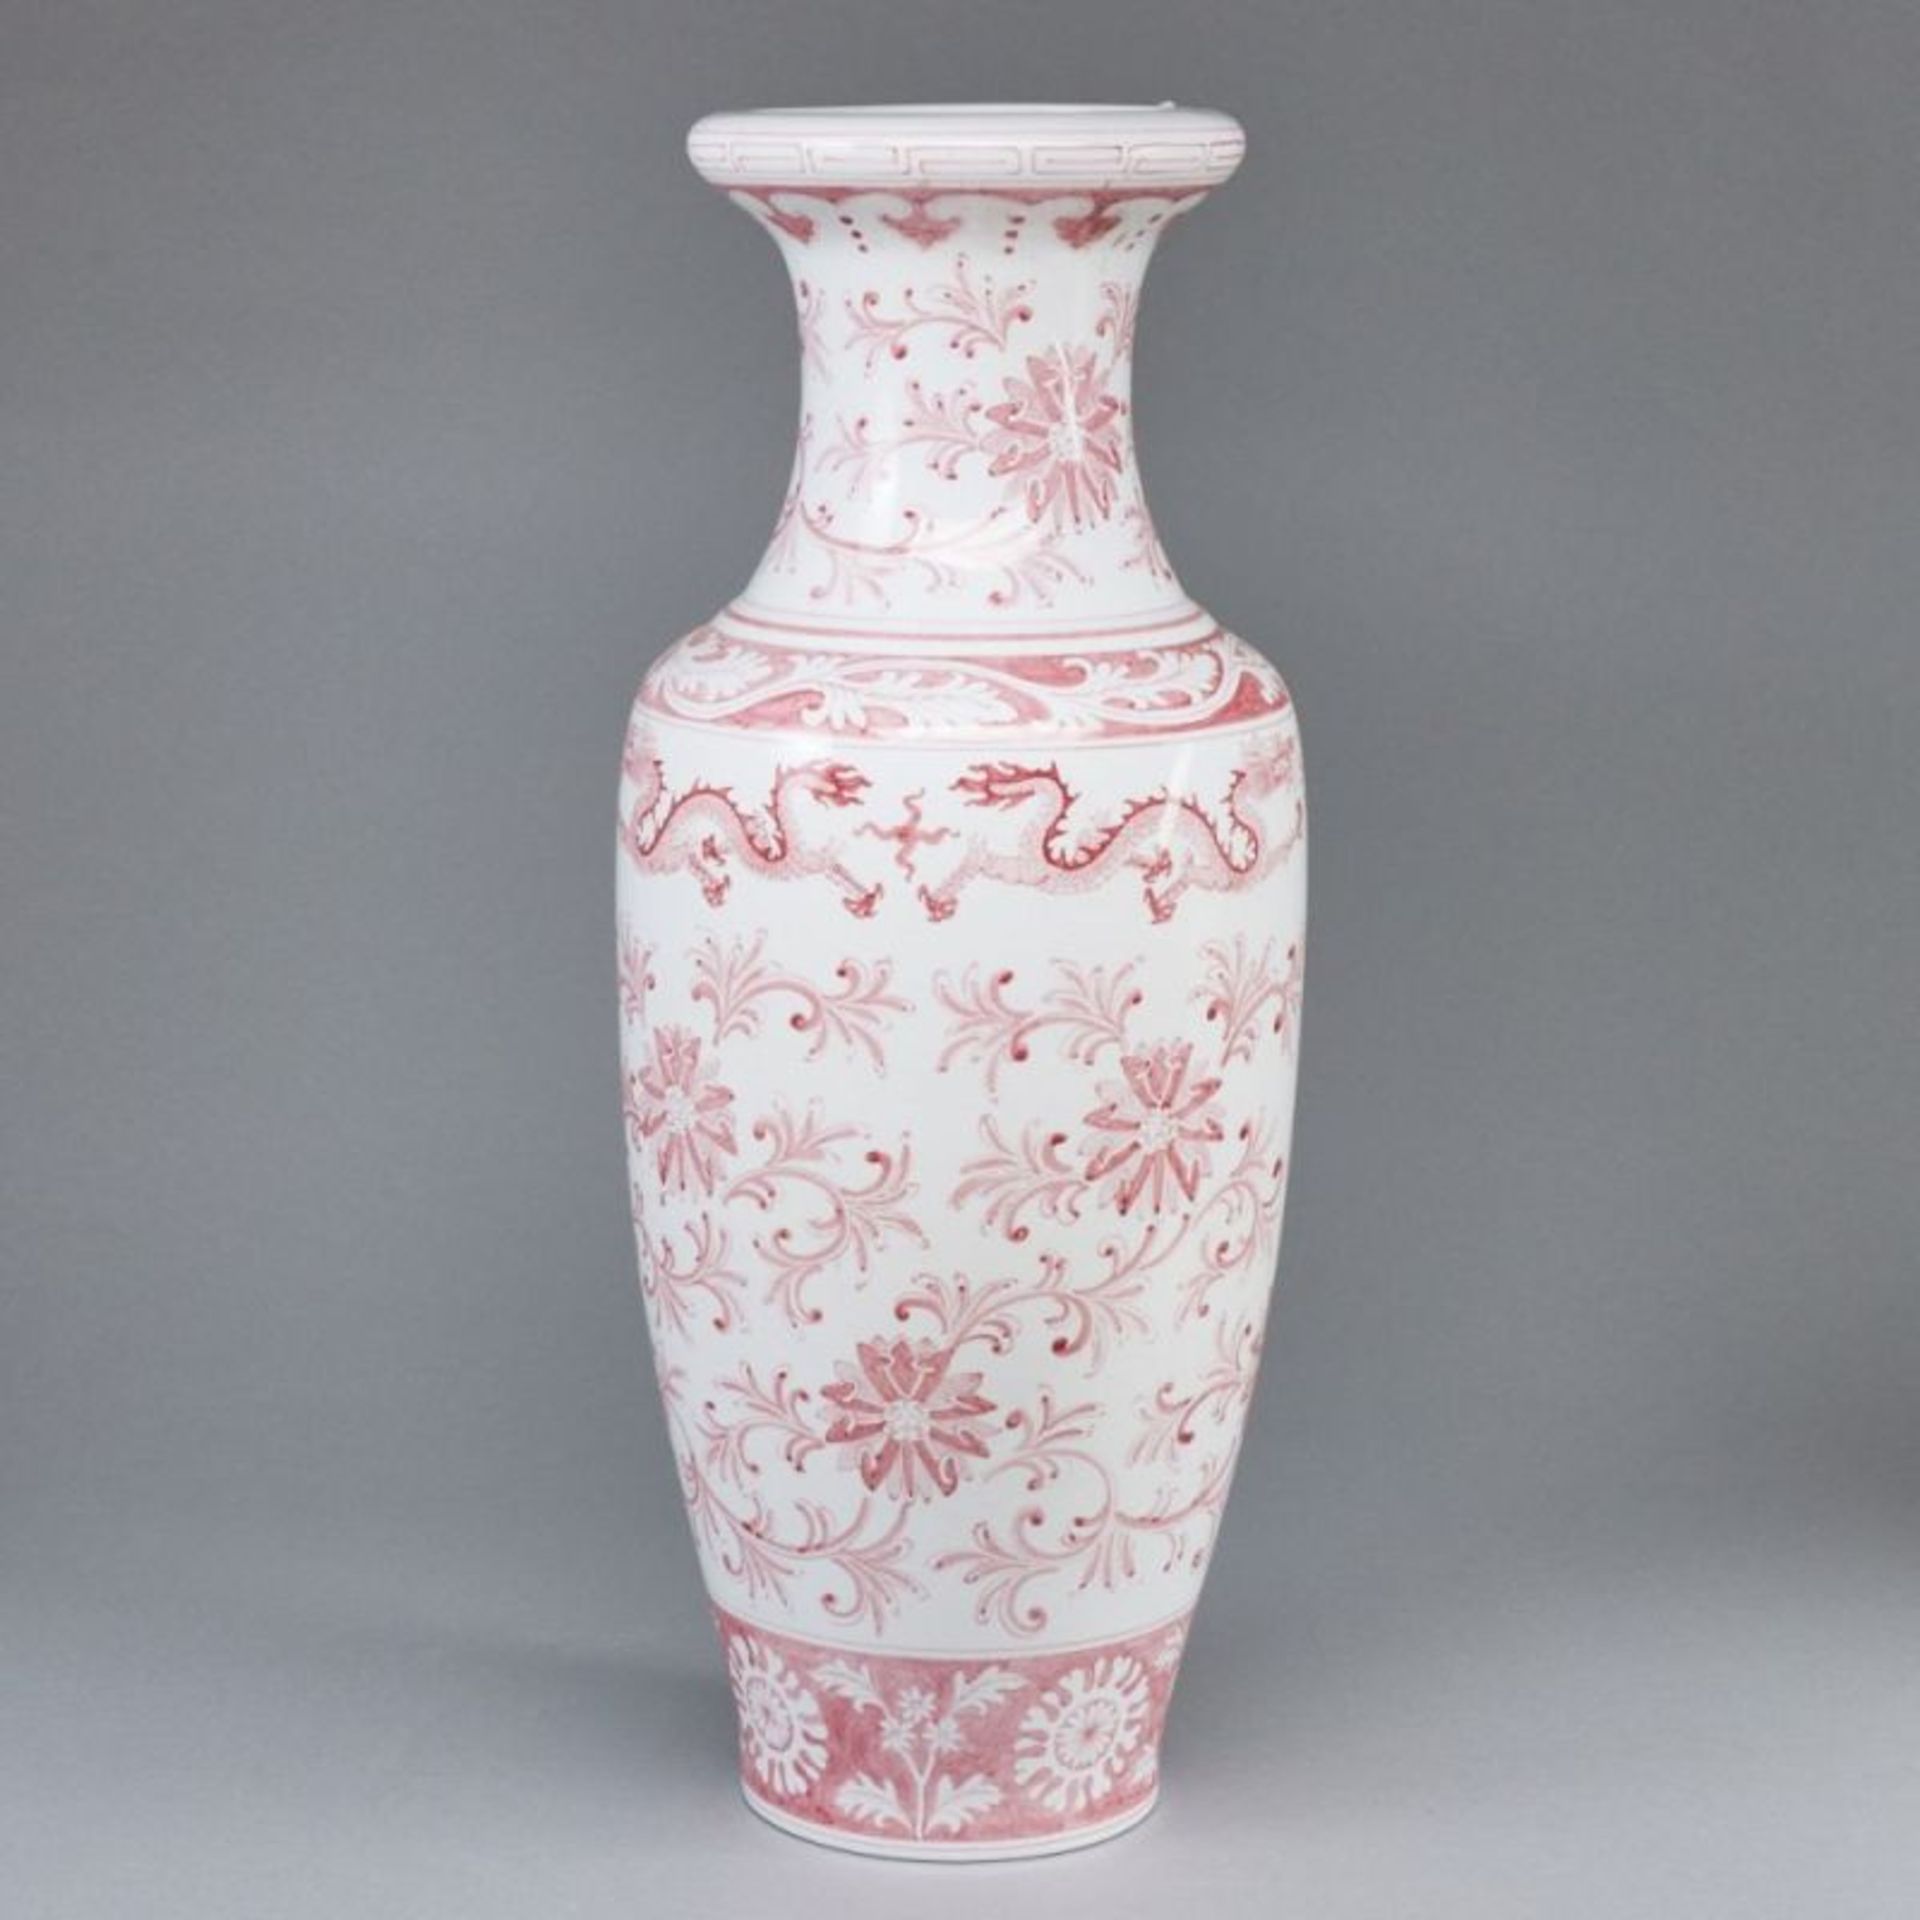 Bodenvase mit floralem Dekor, China - Image 2 of 4